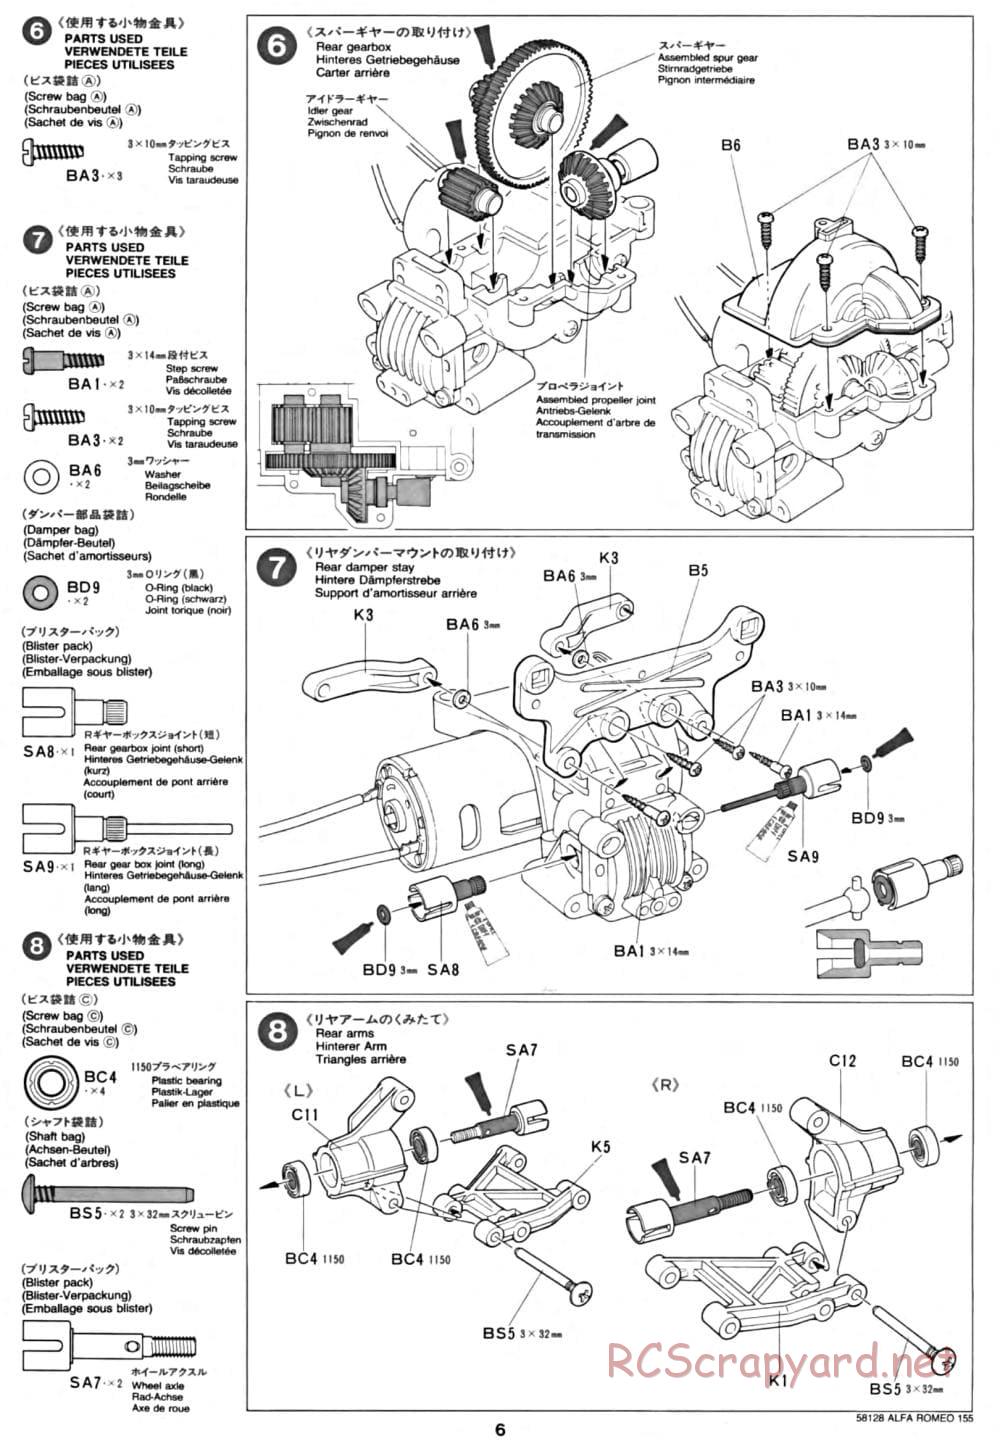 Tamiya - Alfa Romeo 155 V6 TI - TA-02 Chassis - Manual - Page 6